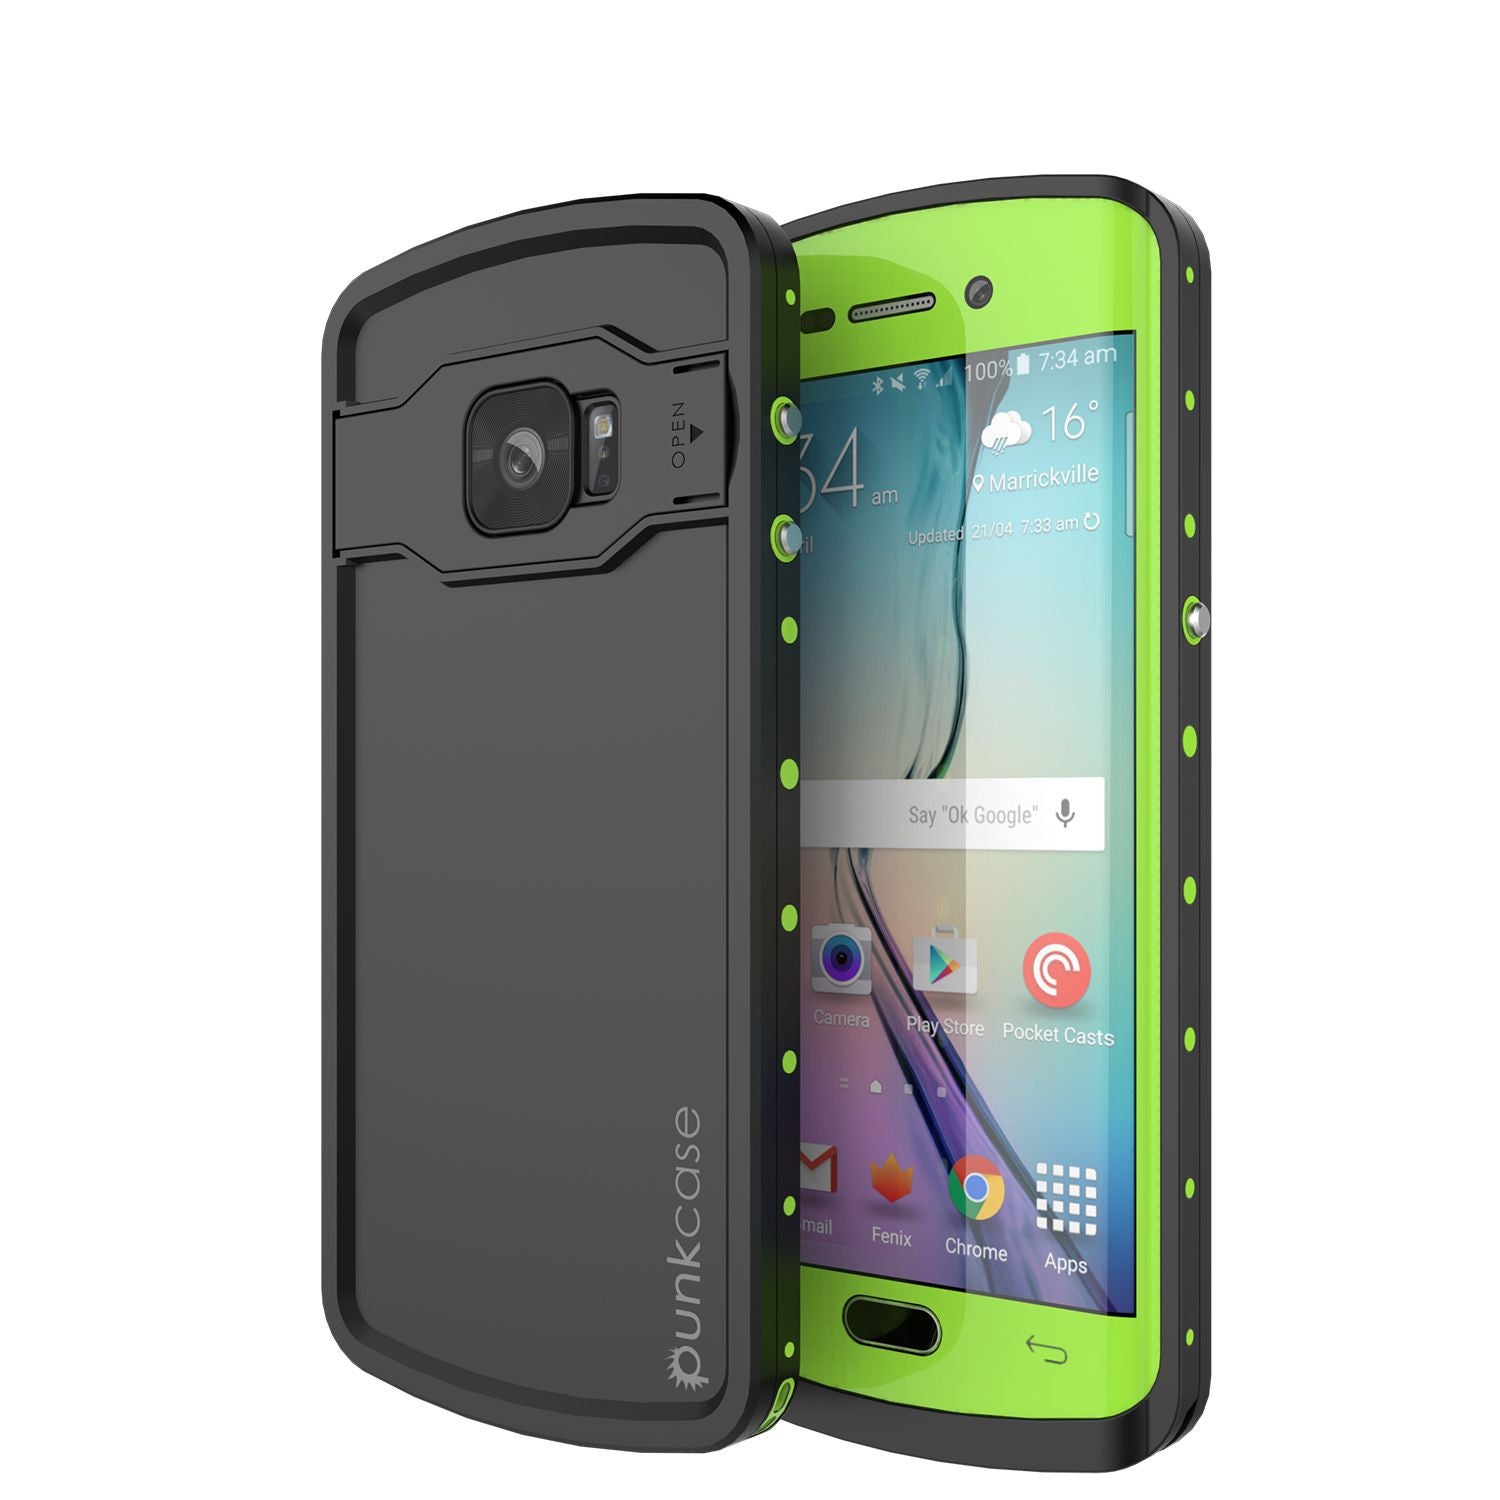 Galaxy s6 EDGE Plus Waterproof Case, Punkcase StudStar Light Green Series | Lifetime Warranty (Color in image: light green)